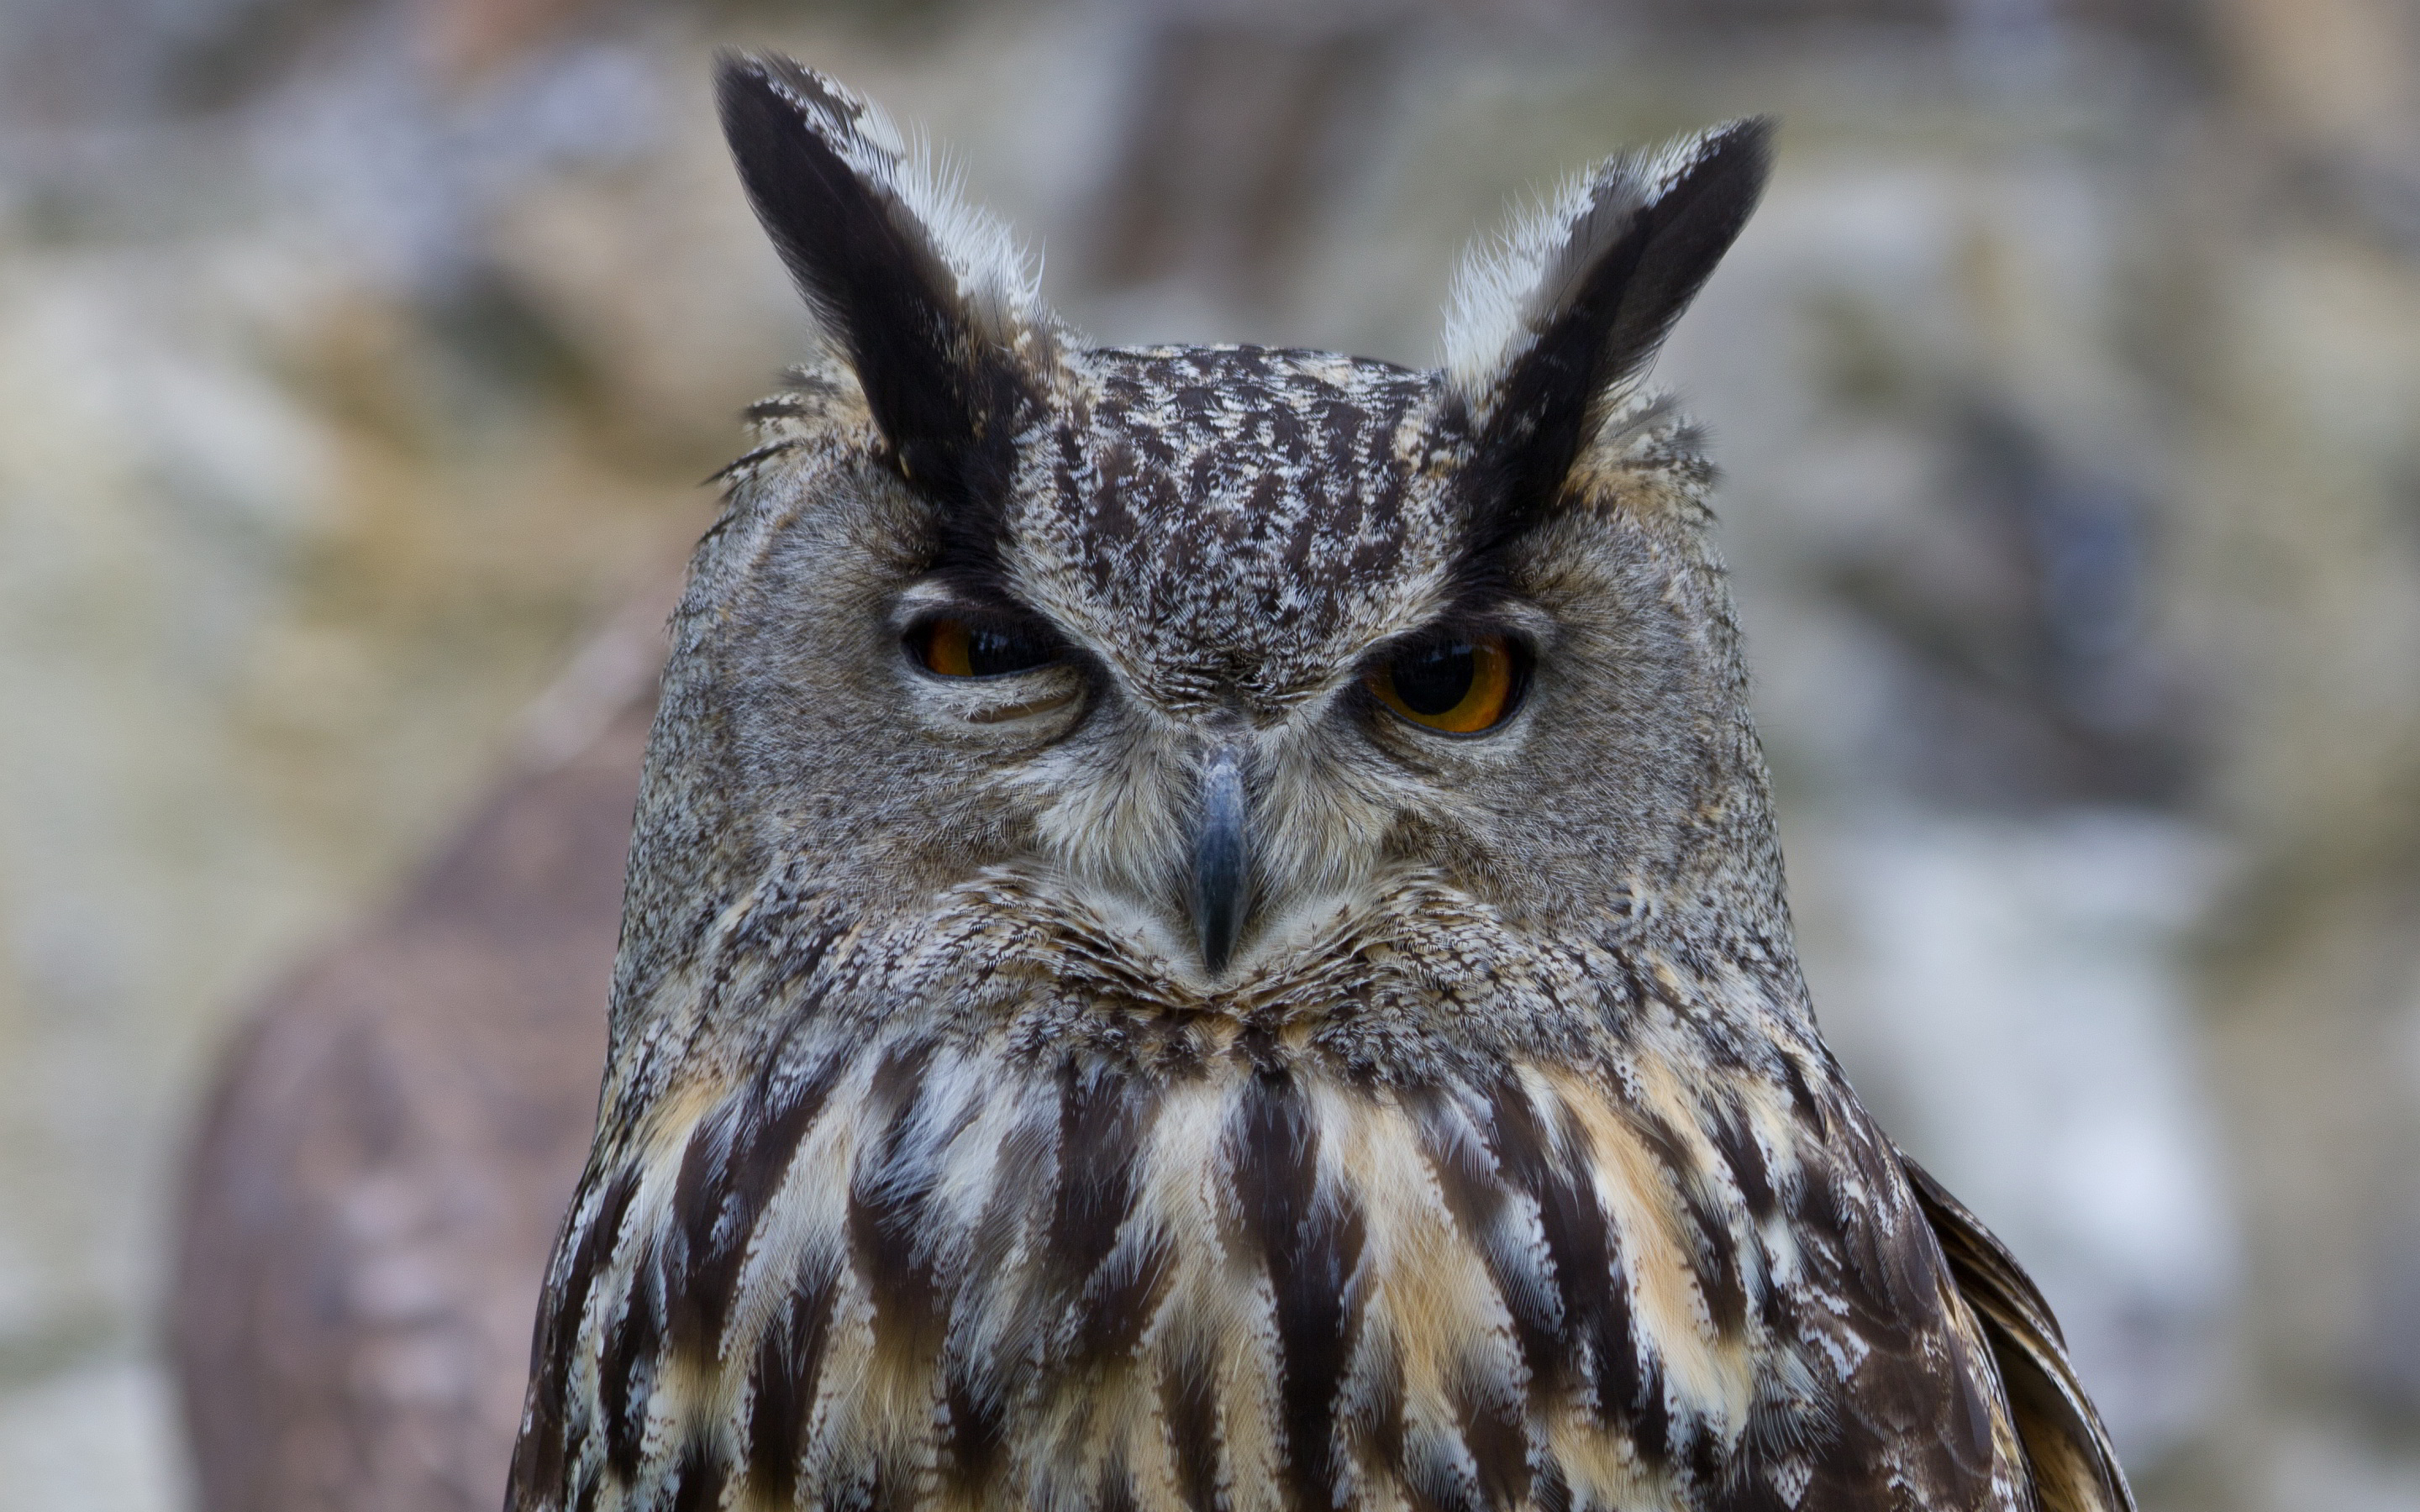 Owl suspicious